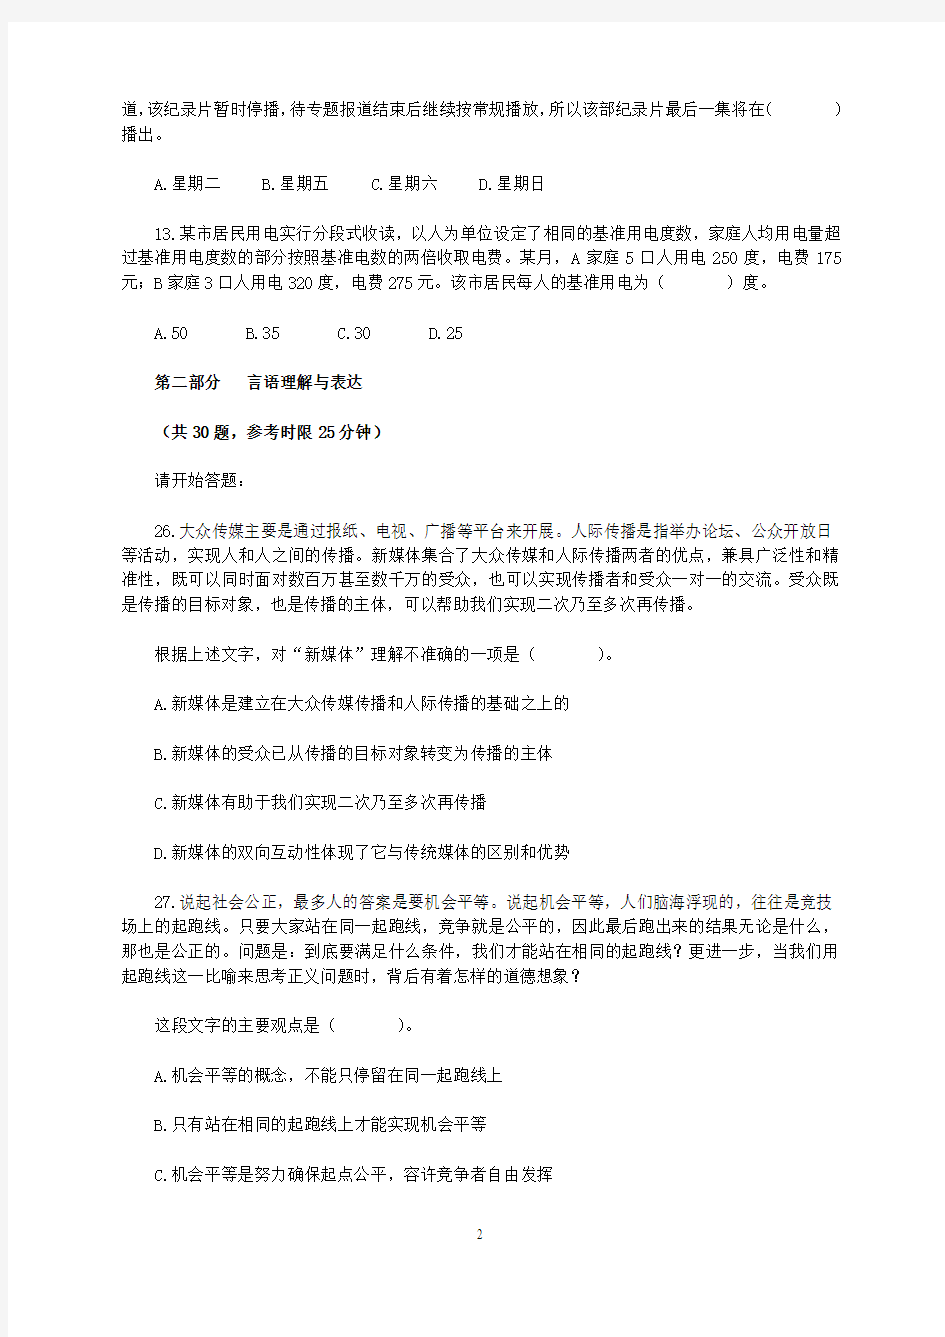 2013年广东省公务员考试《行测》真题(3)及答案